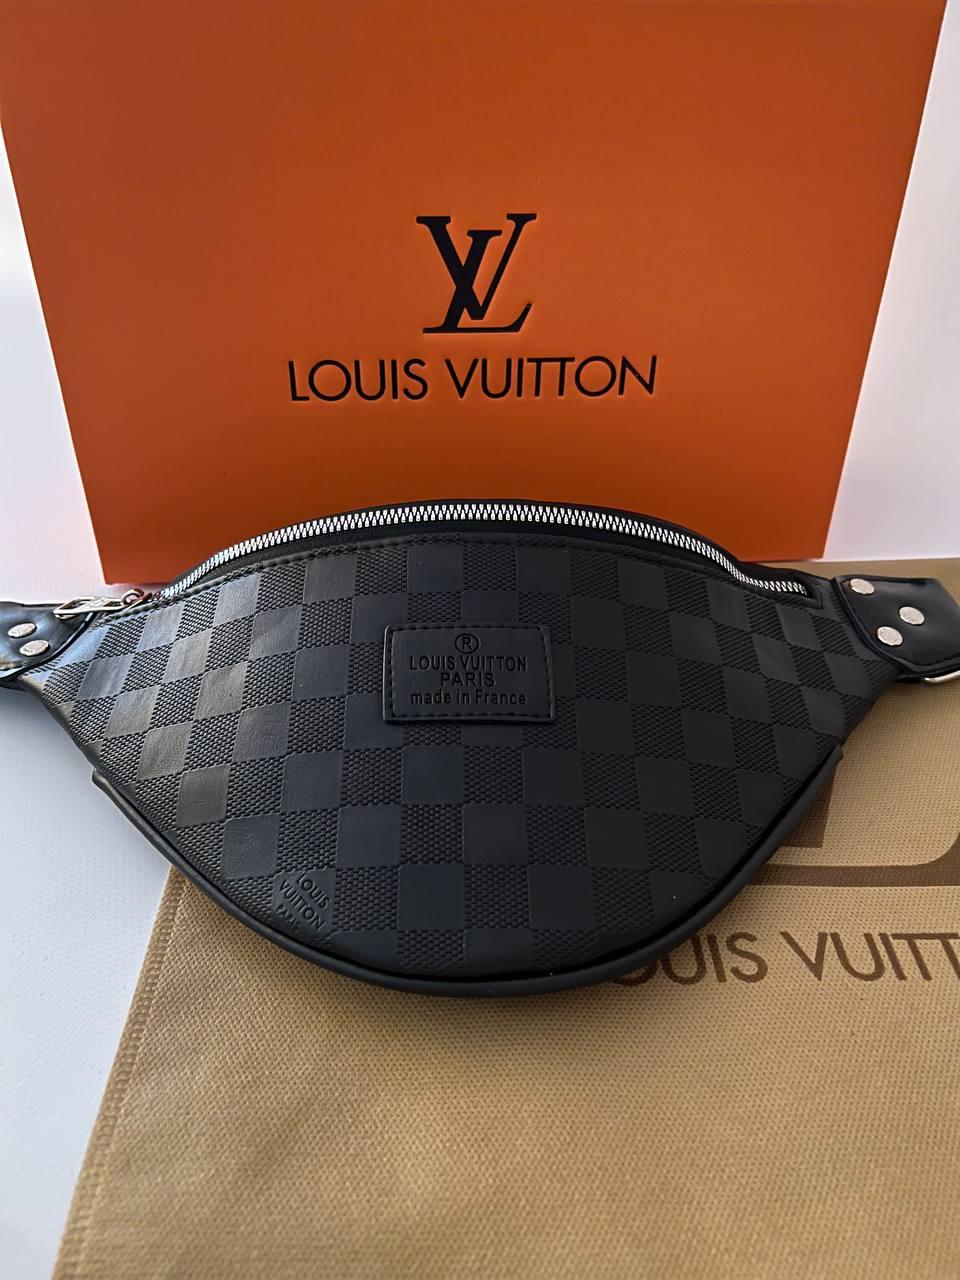 Бананка-сумка чоловіча Louis Vuitton чорна в брендованій коробці